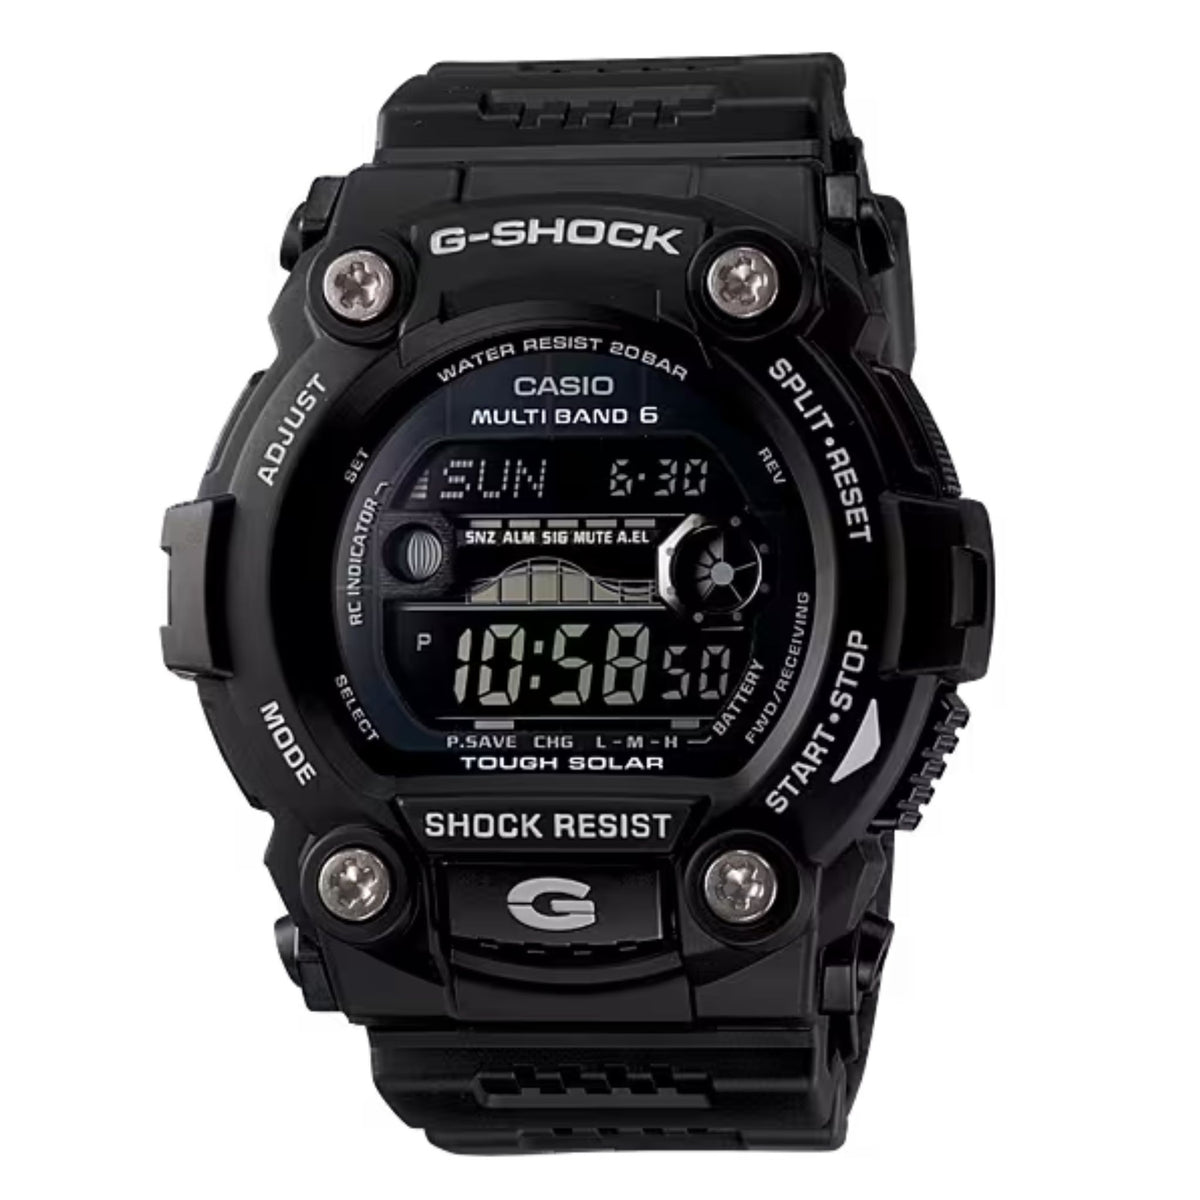 Casio G-Shock Atomic Solar Rescue All Black Watch GW7900B-1